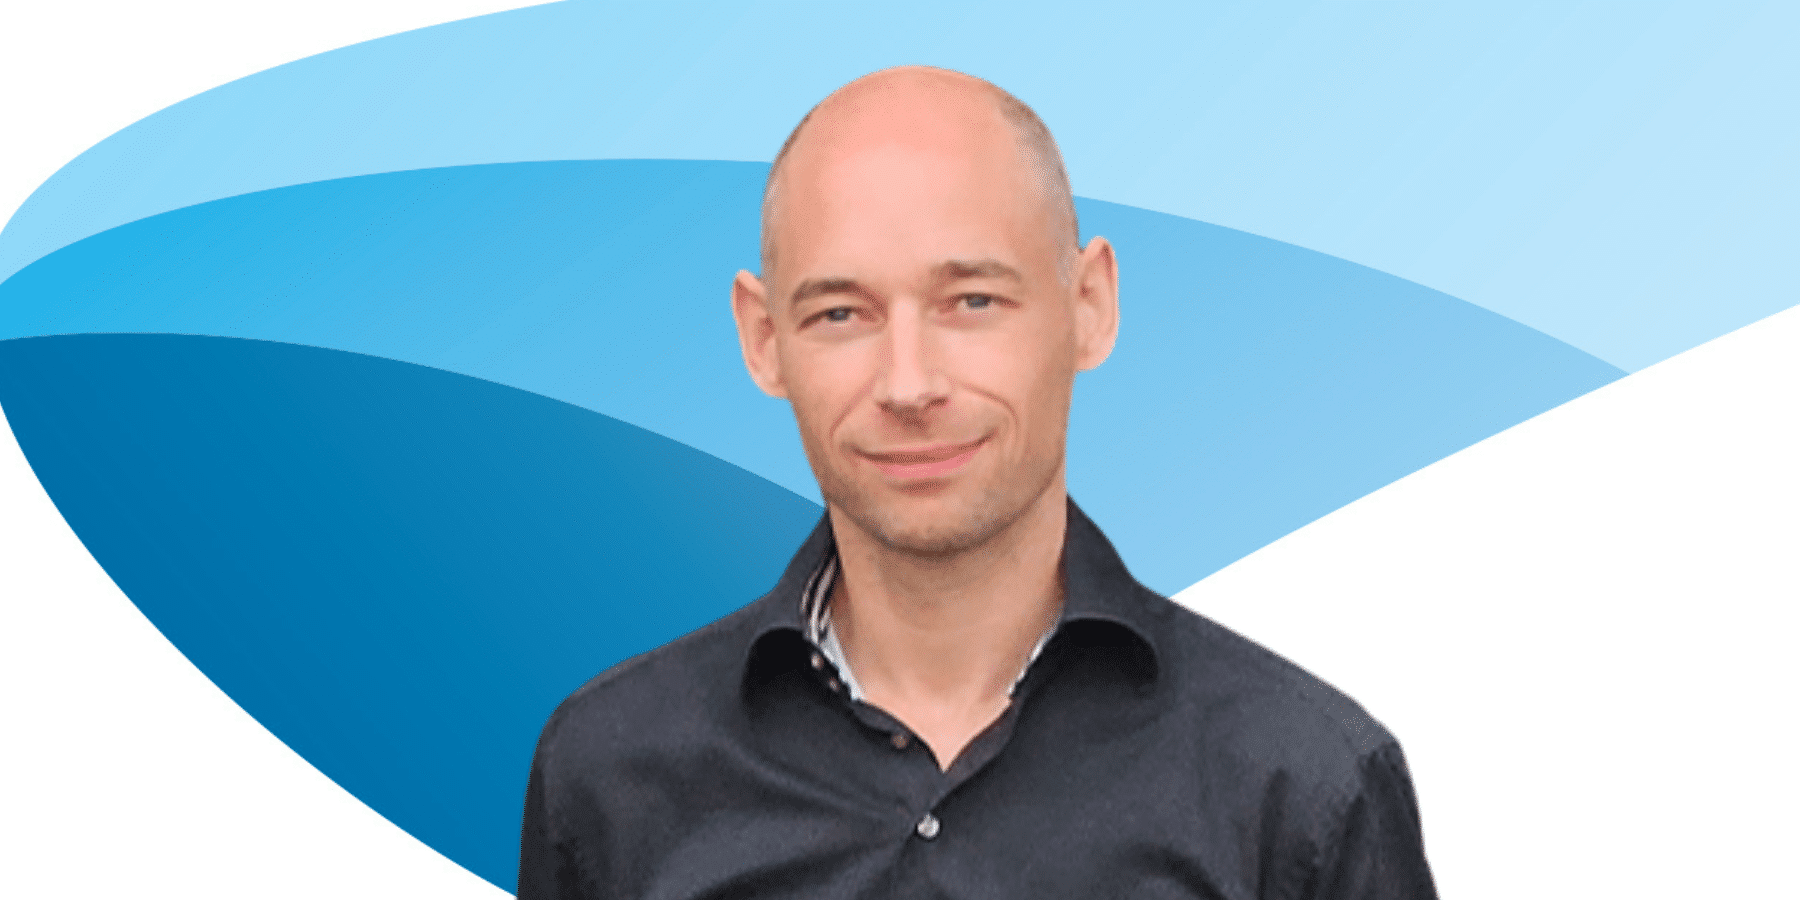 Daniel Gooijer übernimmt als kaufmännischer Leiter von Euromate